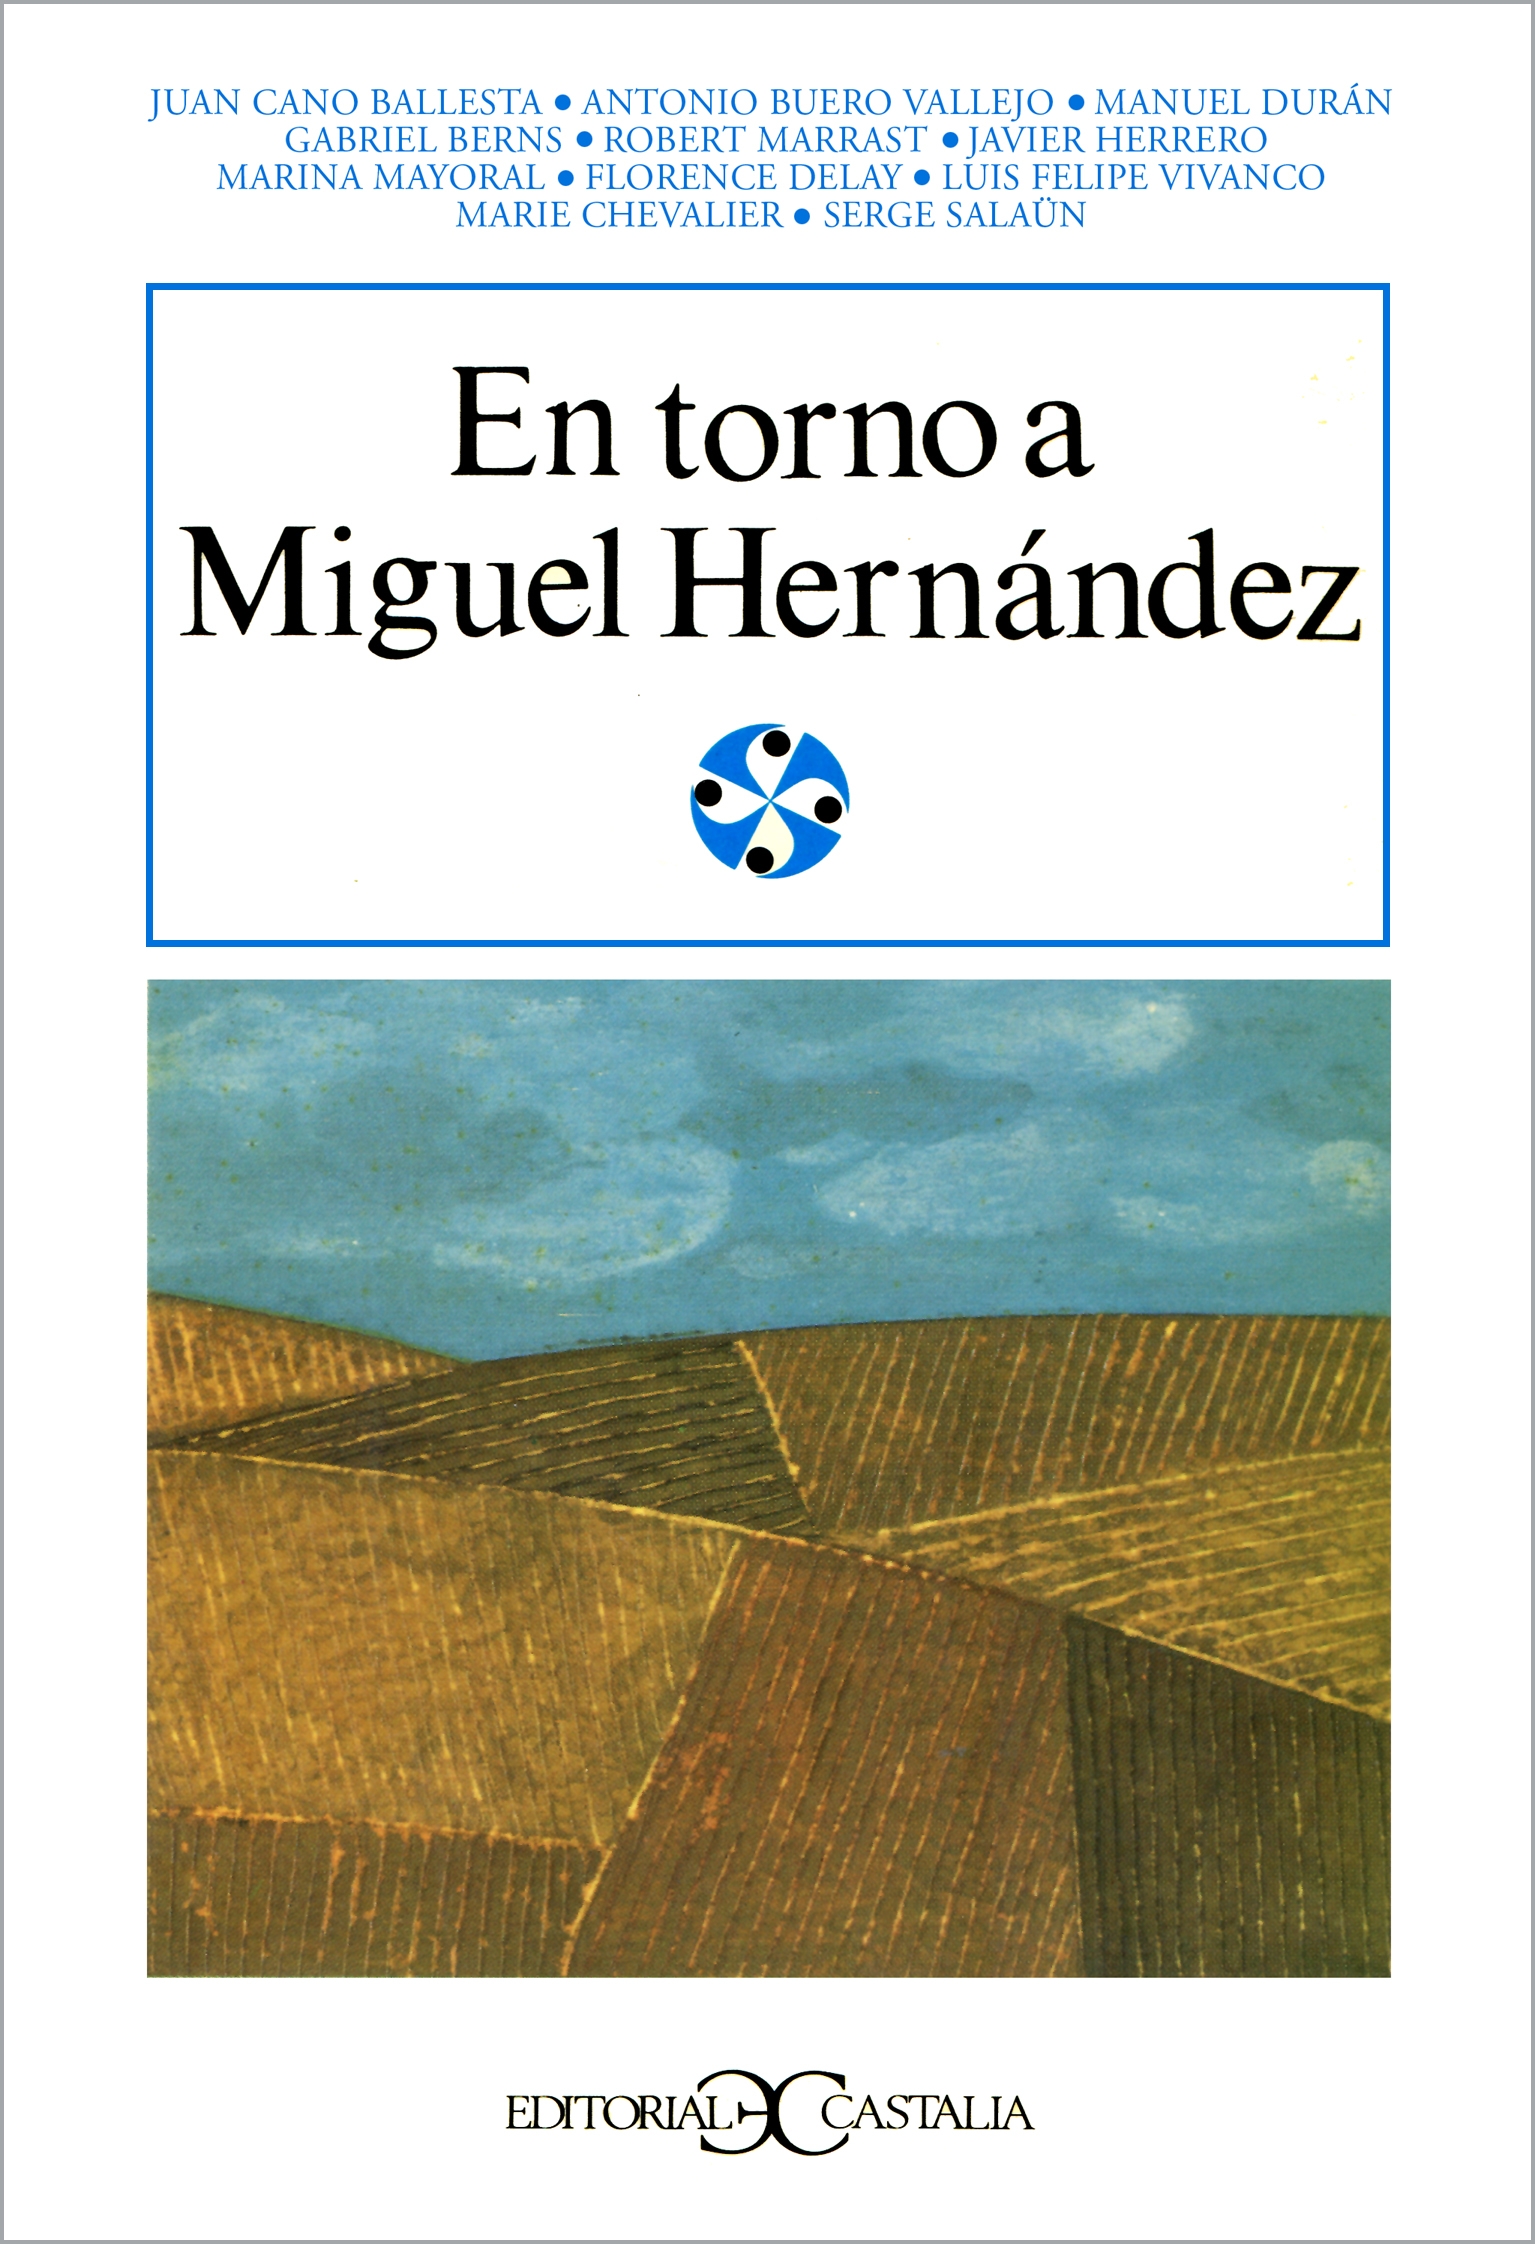 Antología de la poesía española del siglo XX (I)